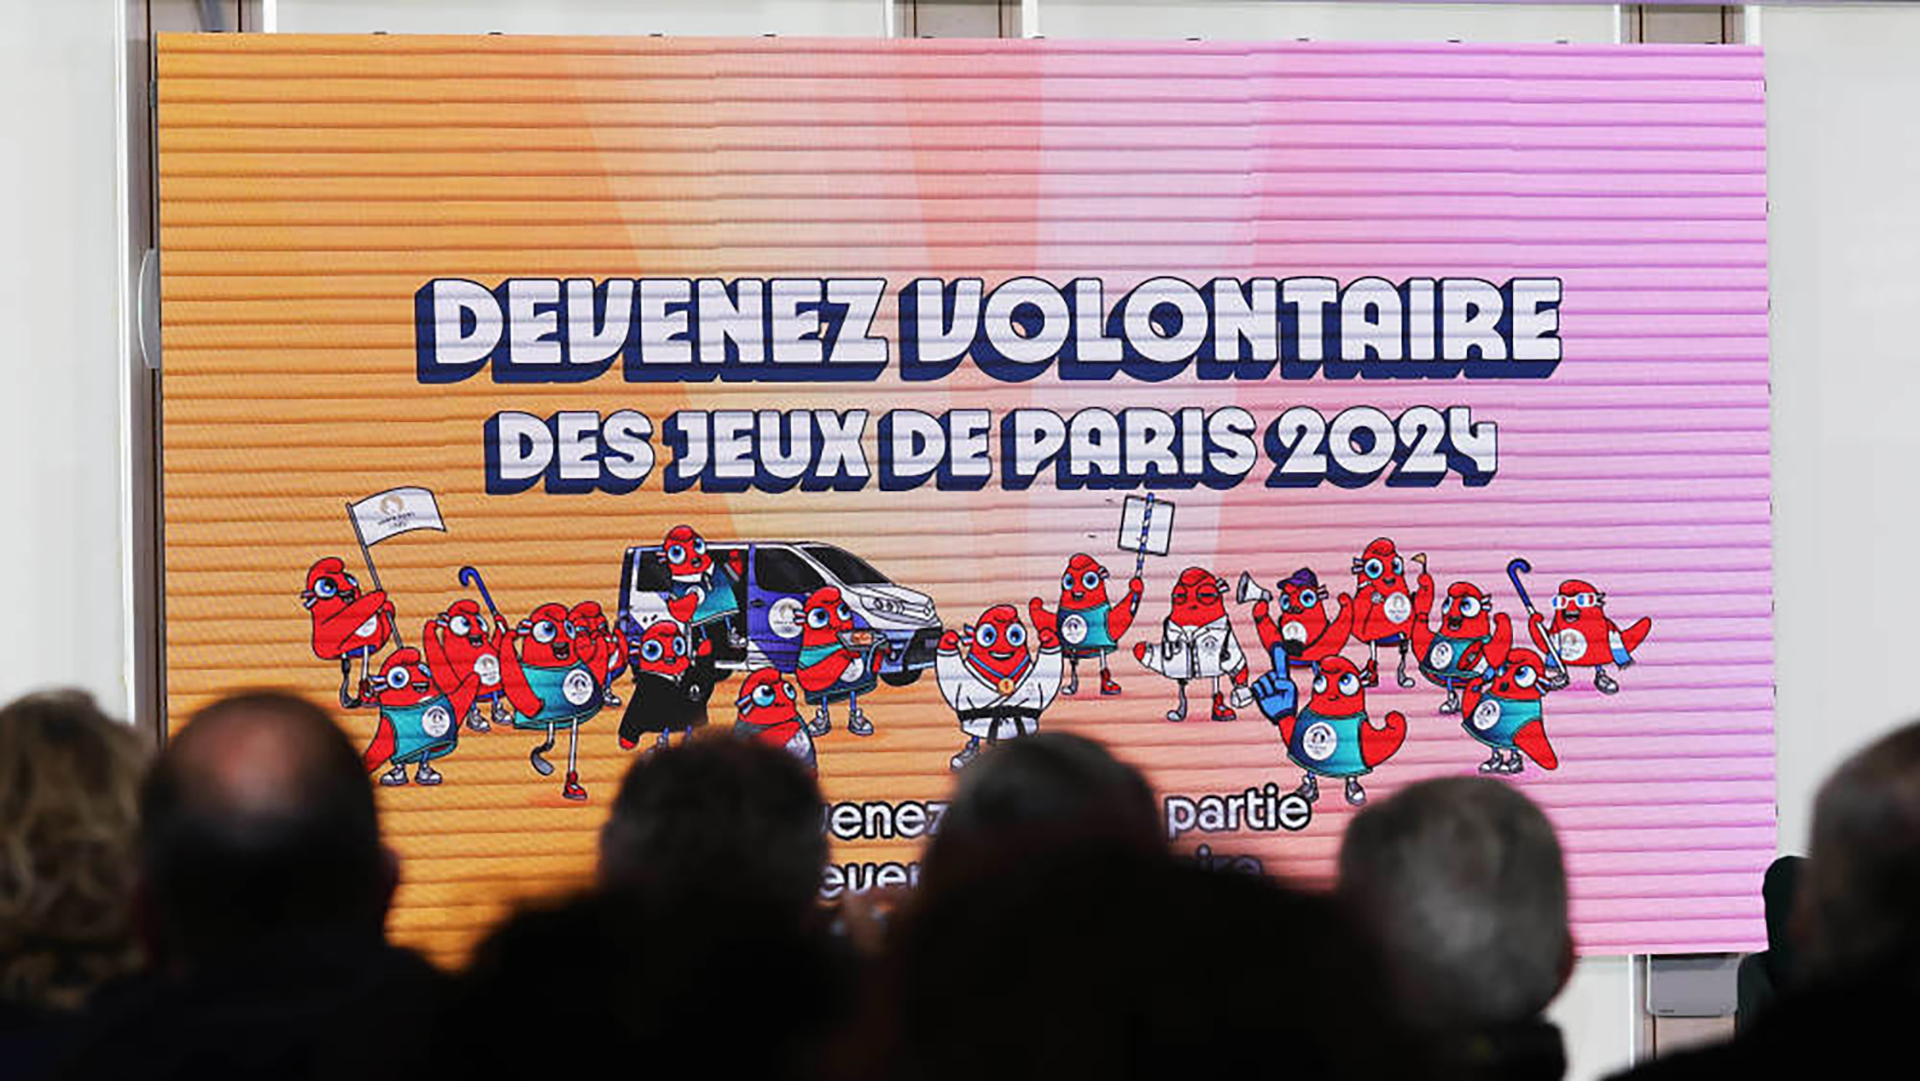 Se abrió el proceso de voluntariado para París 2024: habrá 45 mil seleccionados, pero esperan el doble de aspirantes